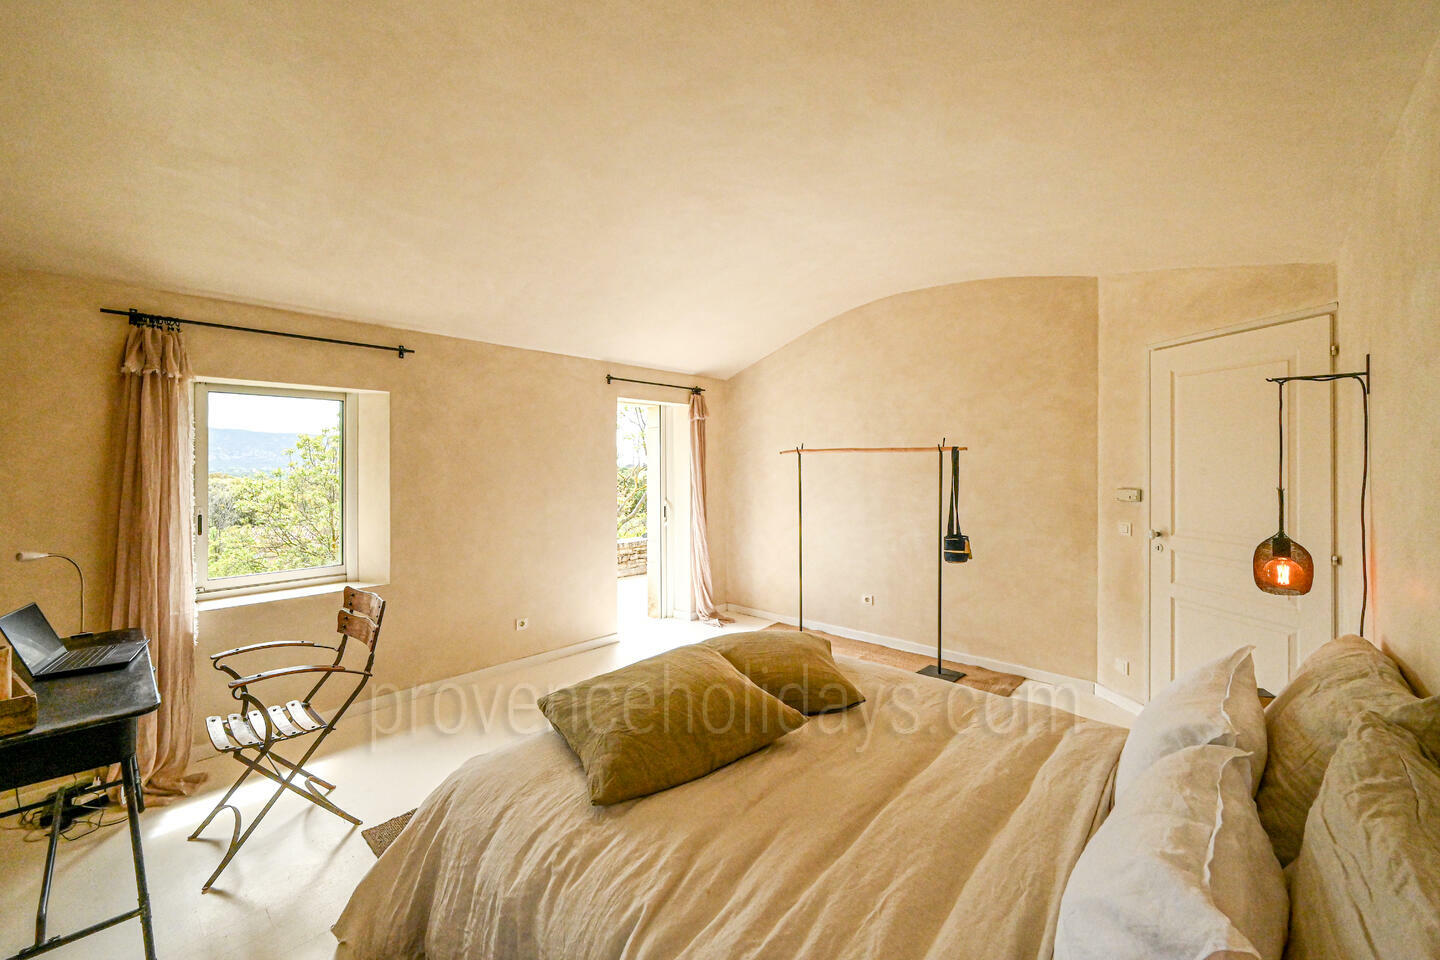 6 - Une Maison en Provence: Villa: Bedroom